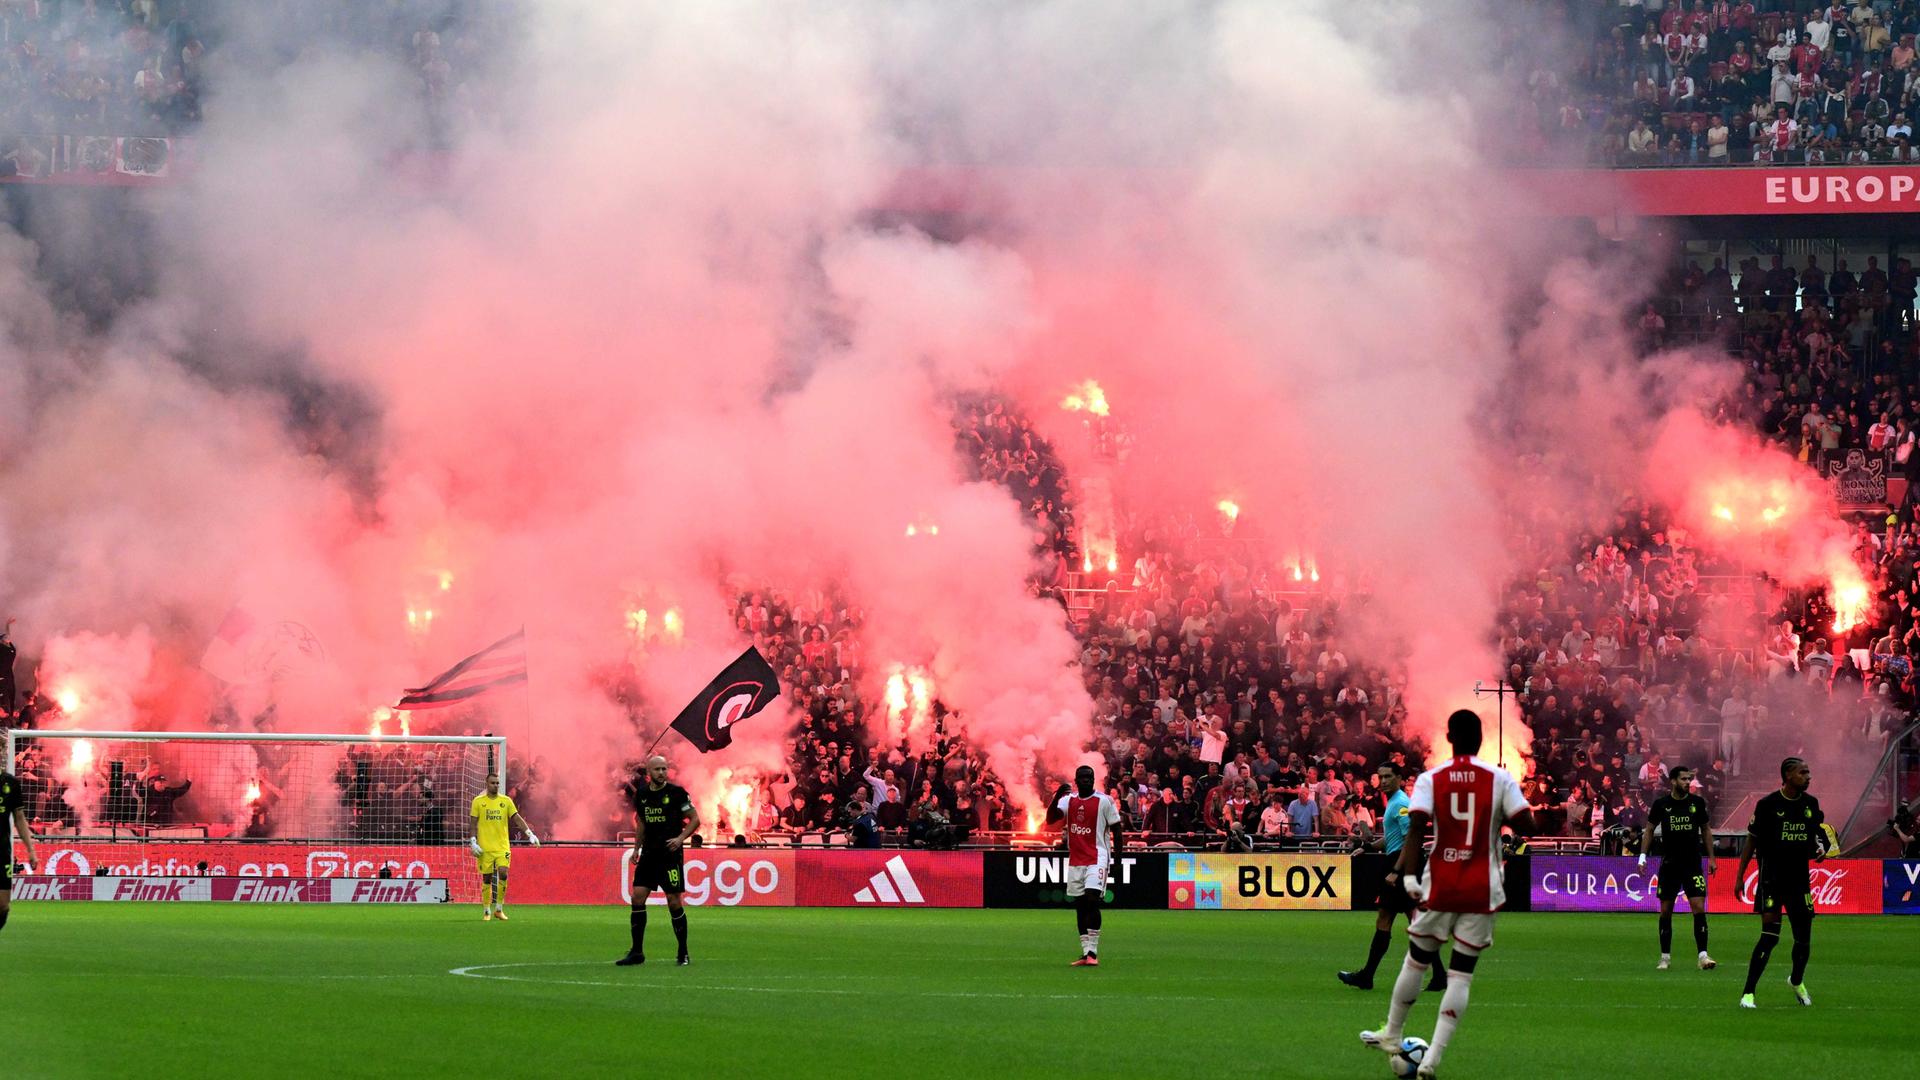 Das Foto zeigt eine Szene aus dem Fußballspiel Ajax Amsterdam gegen Feyenoord Rotterdam. Fans von Ajax Amsterdam zünden auf der Tribüne Pyrotechnik.